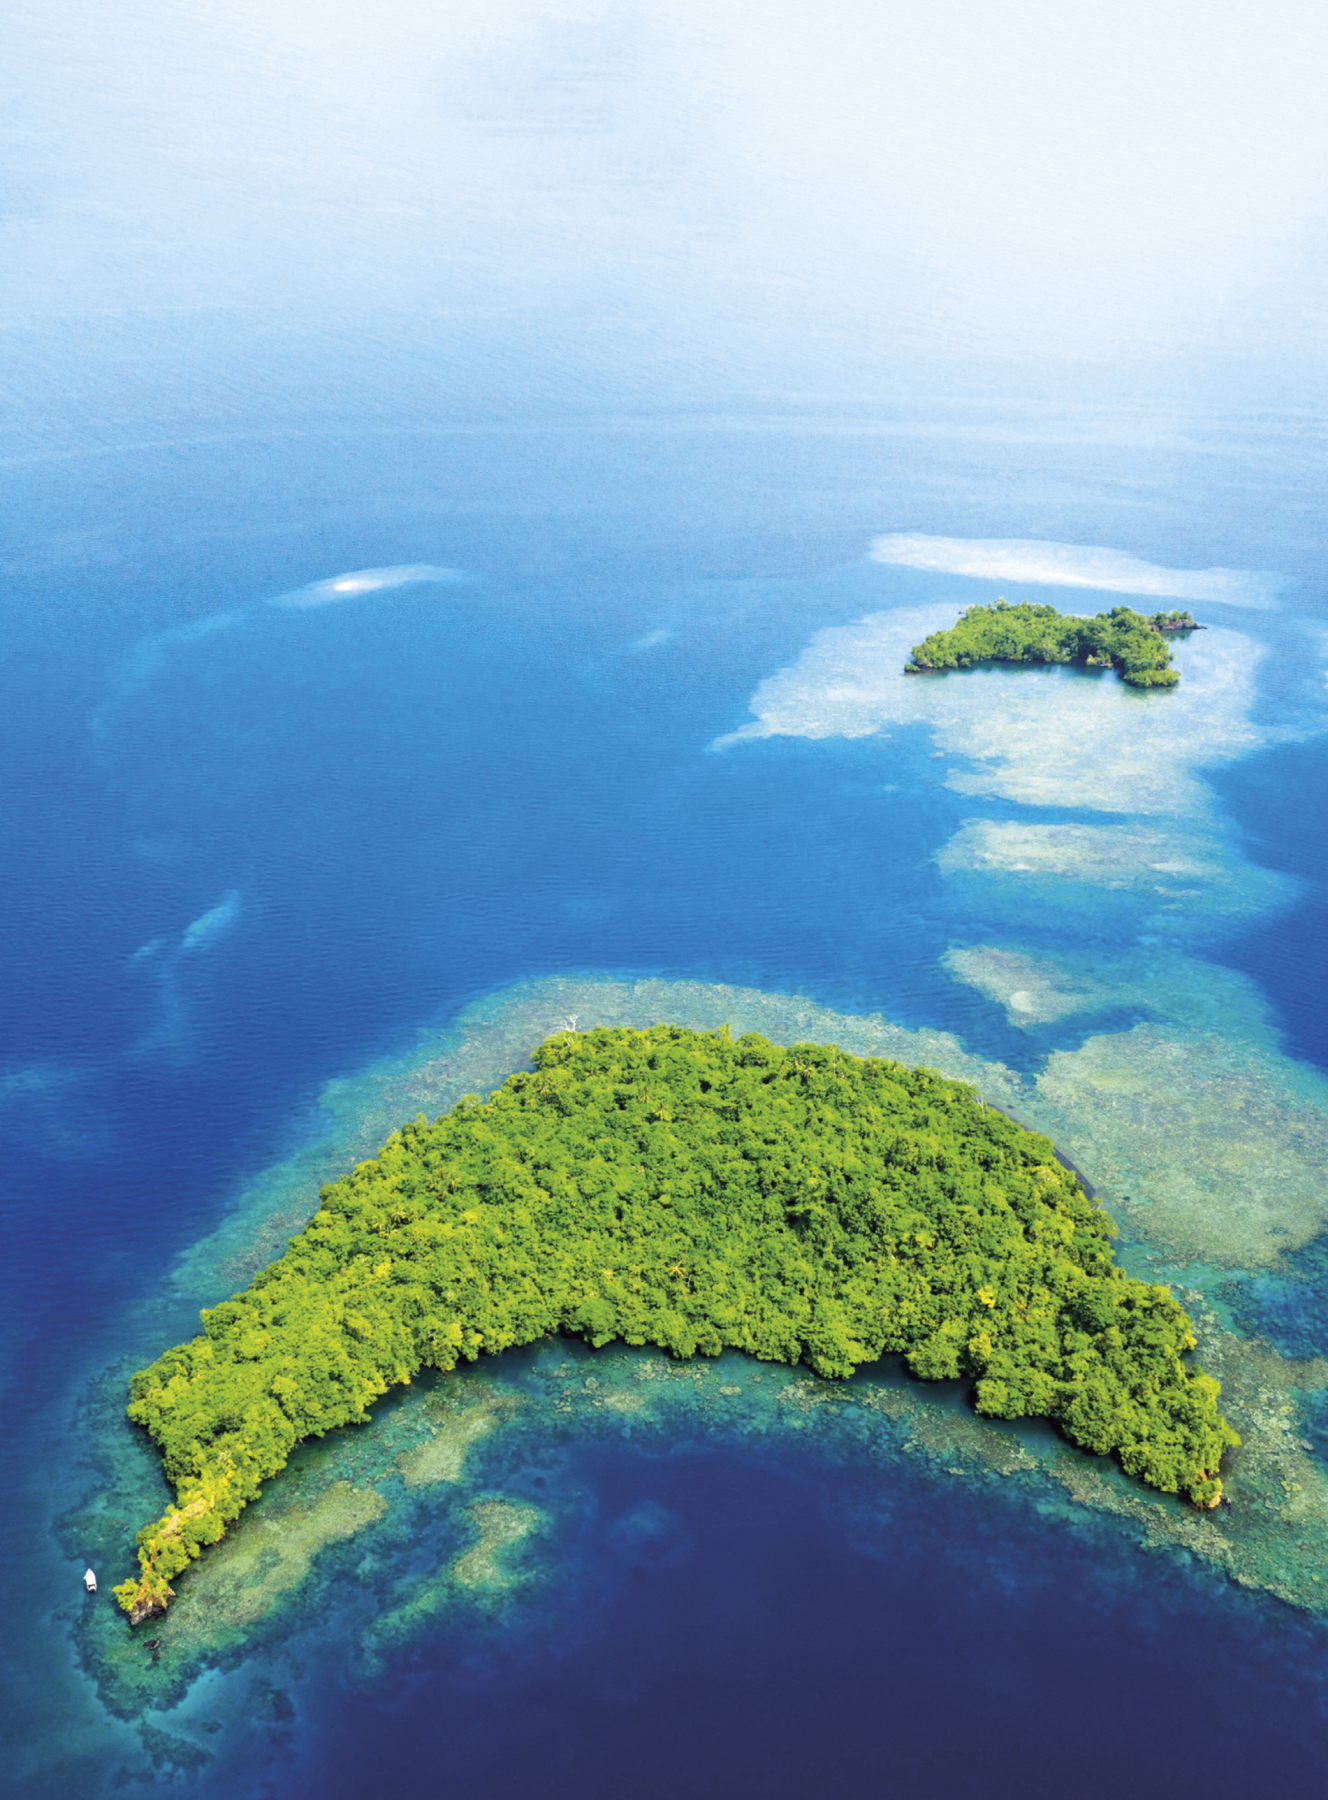 Fotografia. Vista aérea de uma ilha em formato de meia lua coberta por com vegetação densa e verde. Ao redor da ilha, presença de recife de coral e mar azul. Ao fundo, uma ilha menor também coberta de vegetação densa e verde, recife de coral e mar azul.